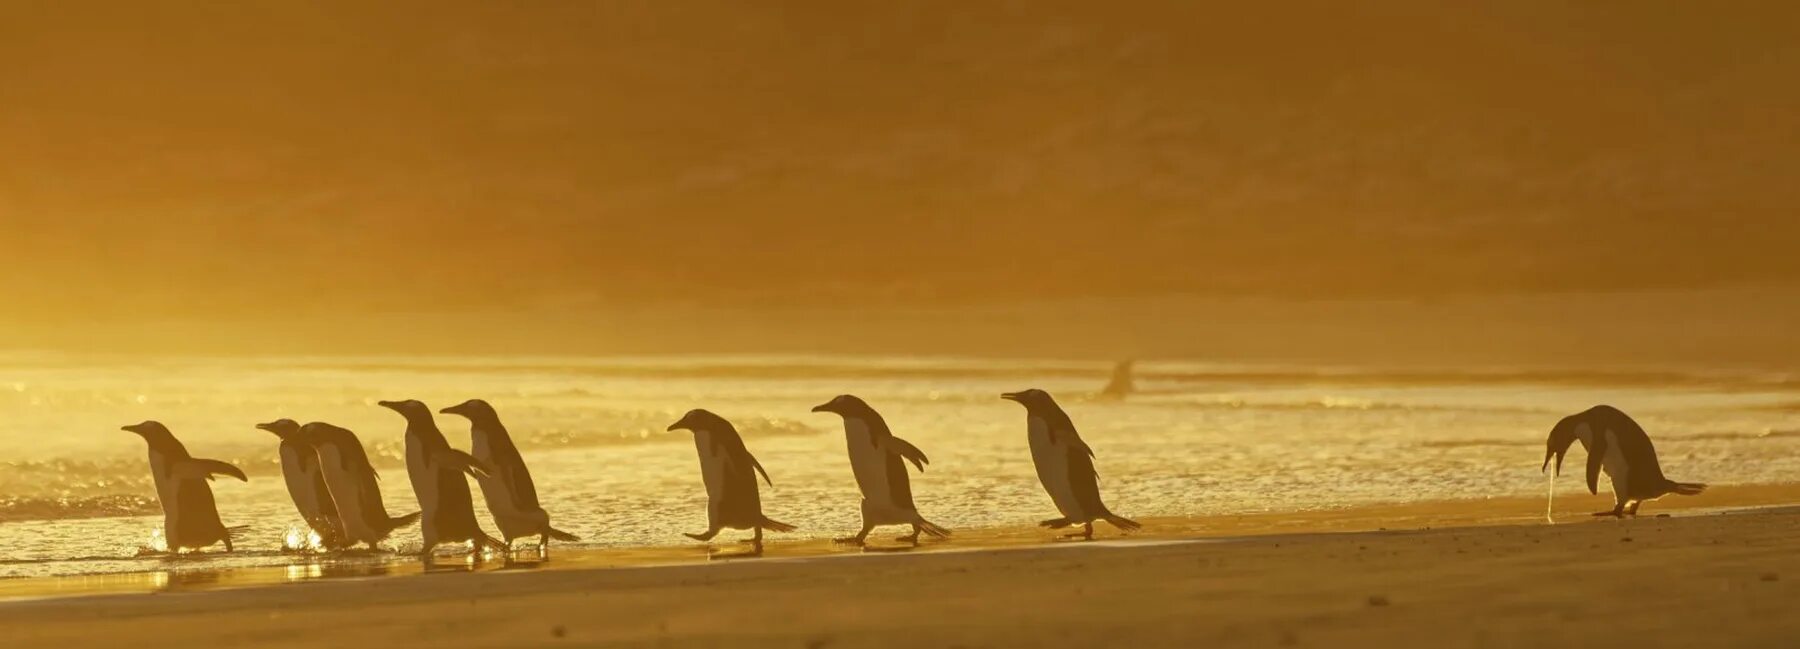 Пингвины идут с пляжа молча. Пингвины на закате. Пингвин идет. Пингвины сидят на закате. Картинки на рабочий стол пингвины.